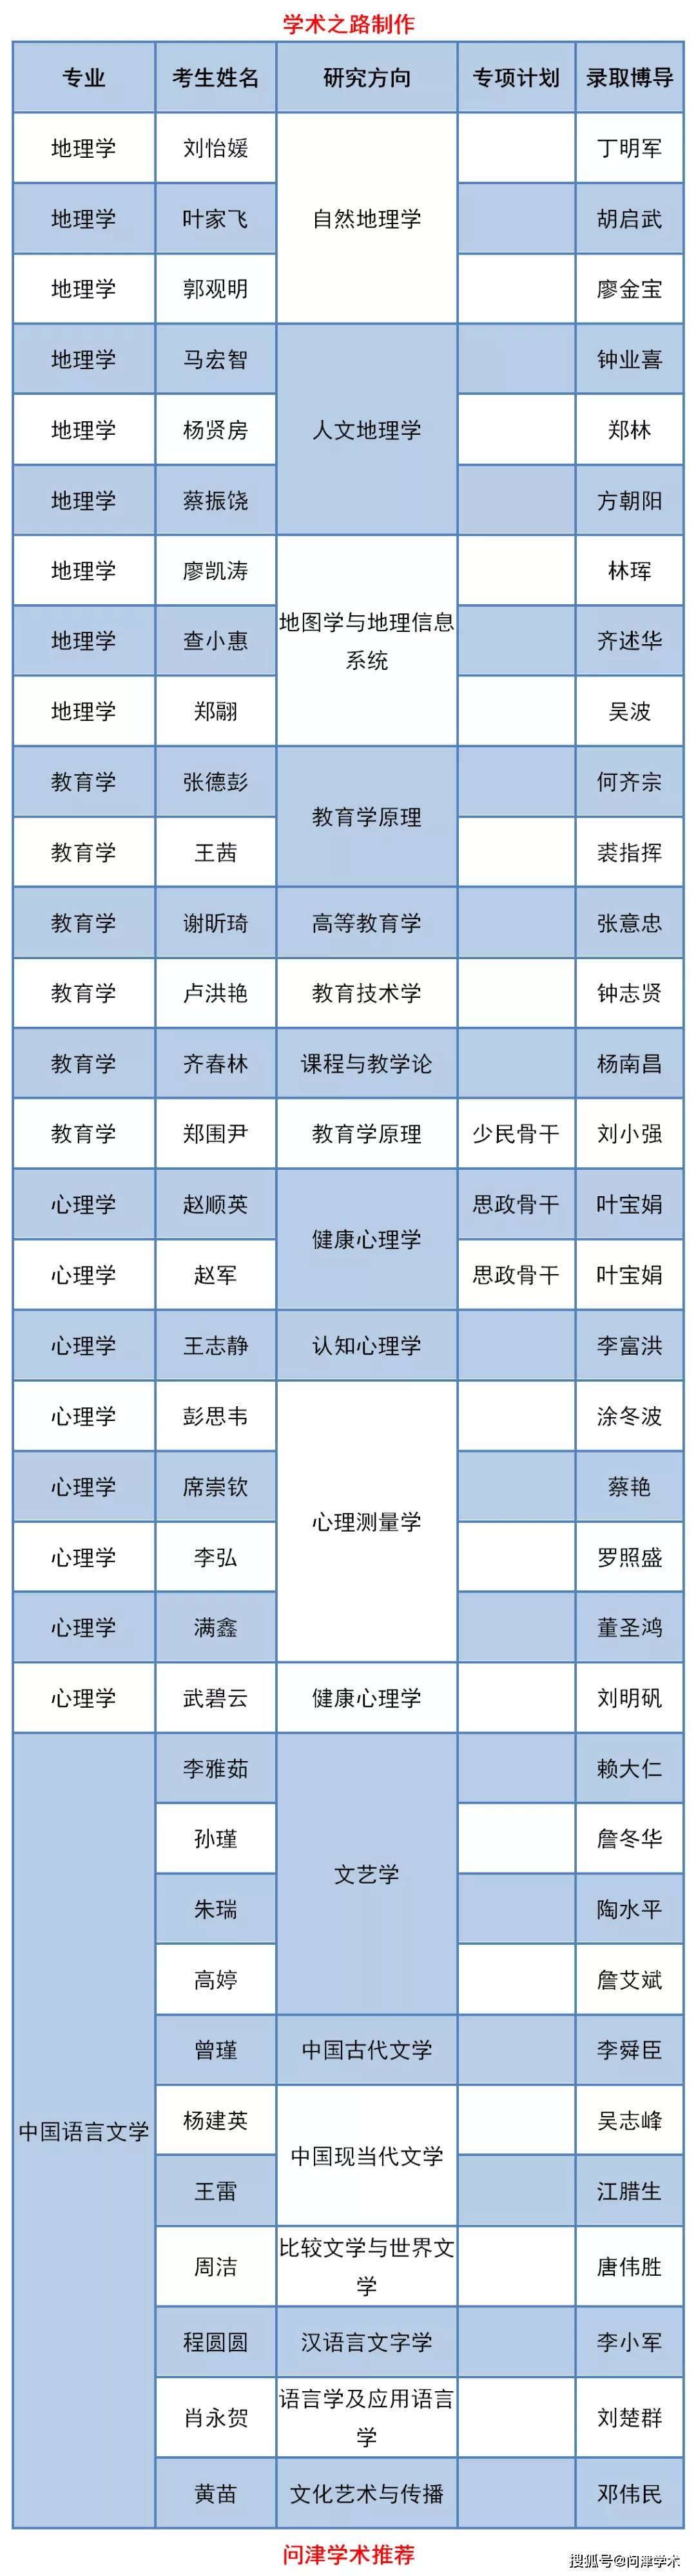 江西师范类大学排名_江西师范大学2020年博士生拟录取名单公示